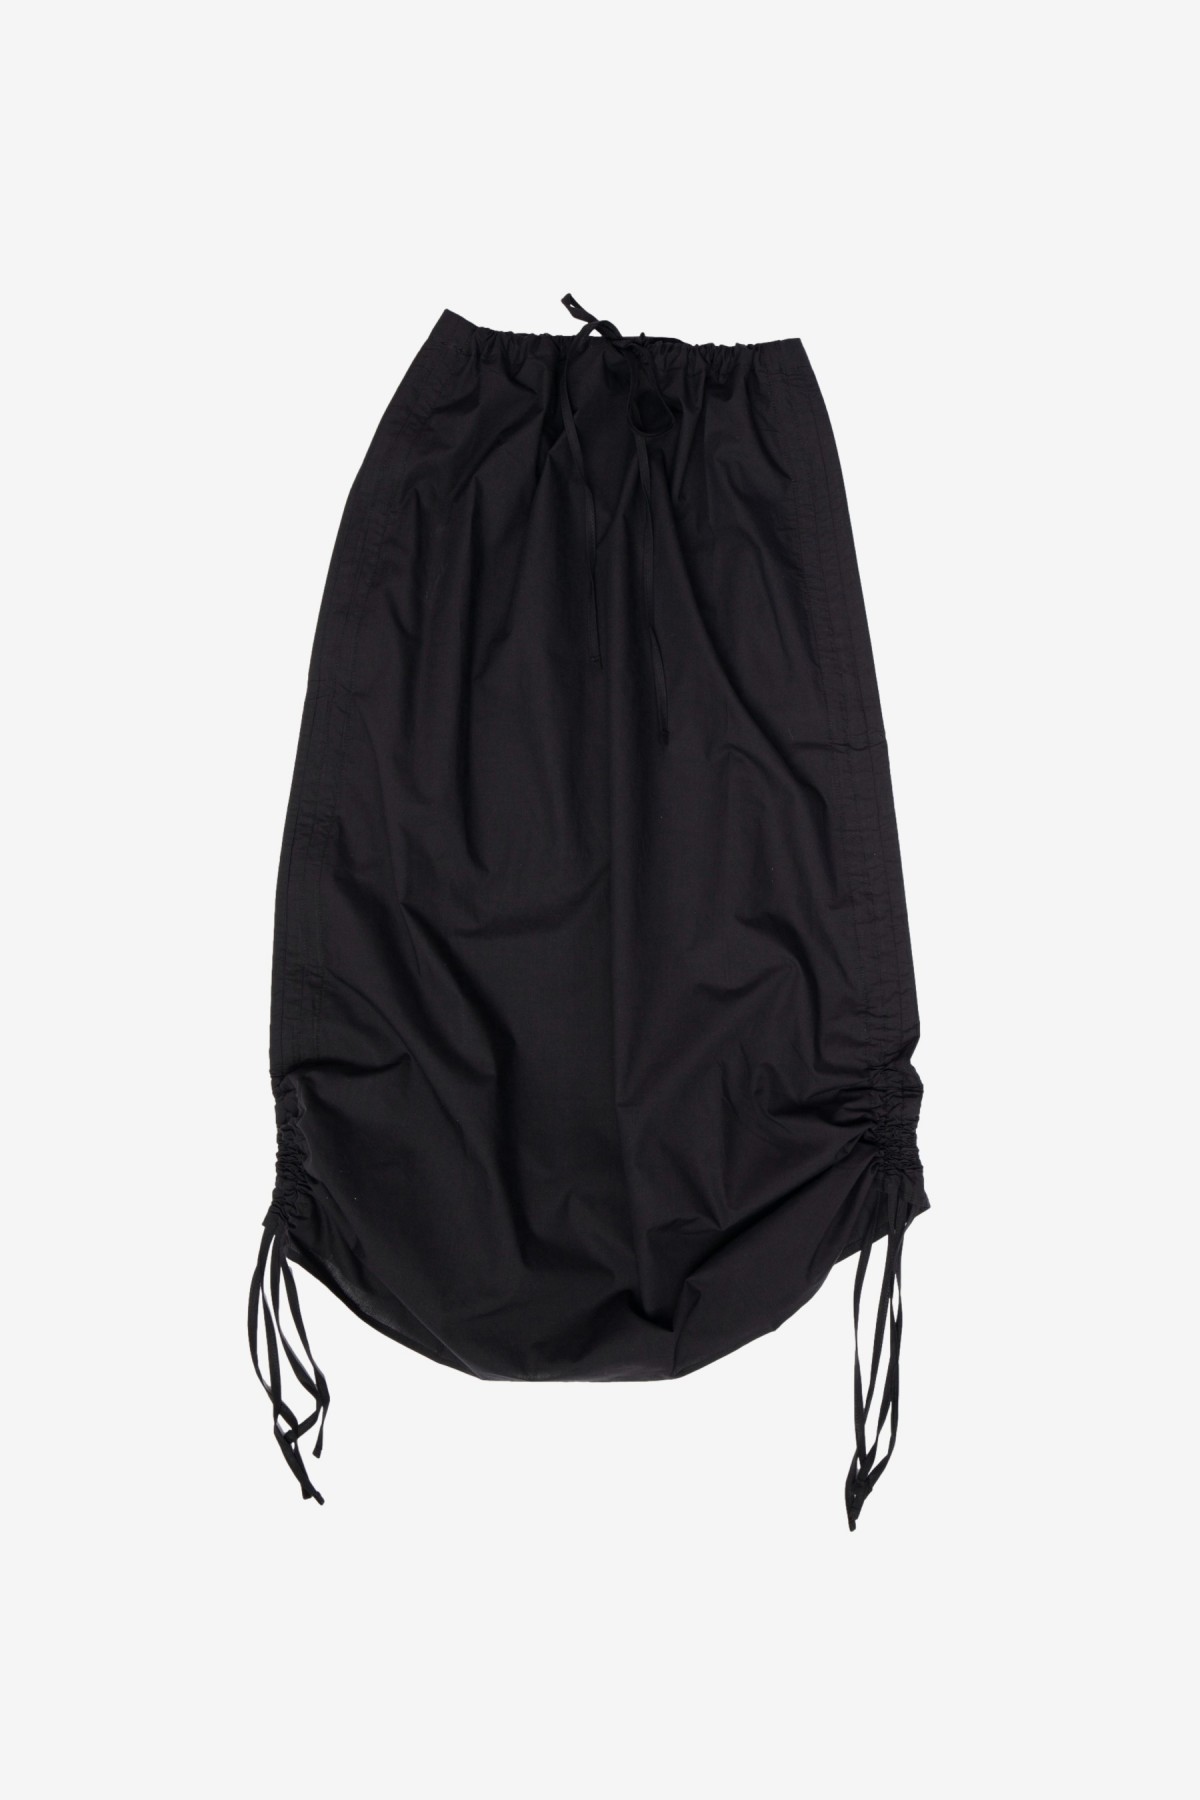 Baserange Pictorial Strap Skirt in Black